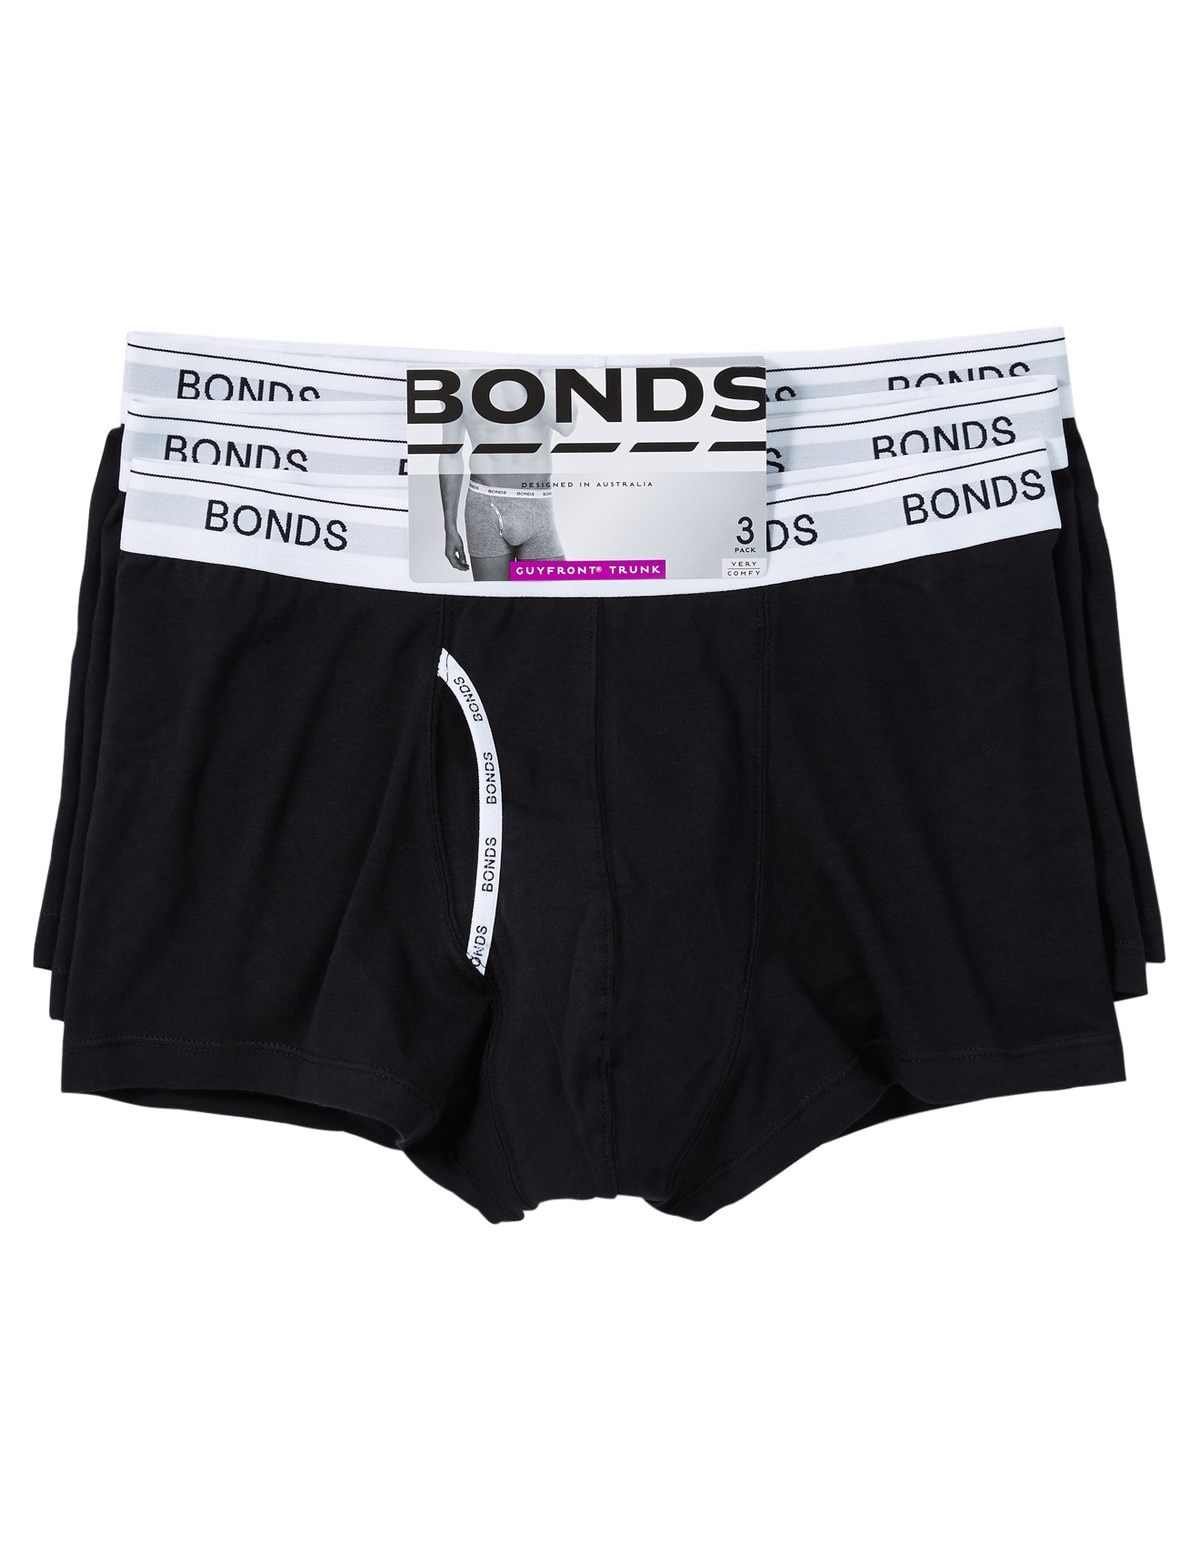 NZSALE  Bonds Mens 3 Pairs Bonds Cotton Brief Underwear With